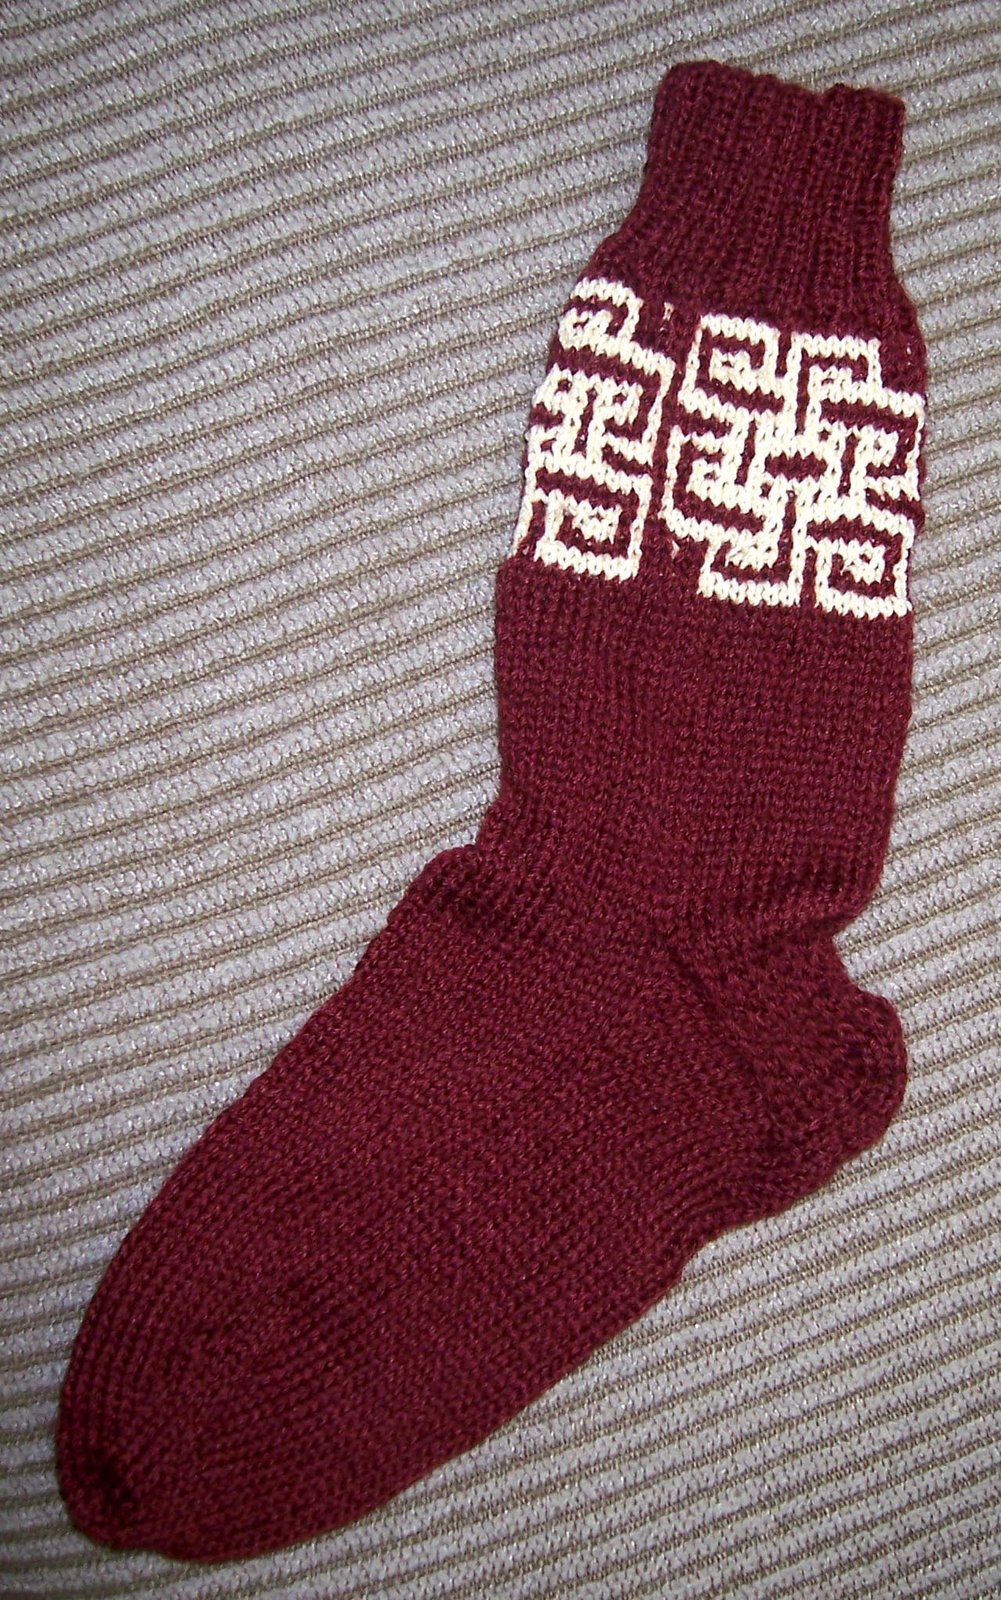 [Sarah+Roy's+mosaic+socks.jpg]